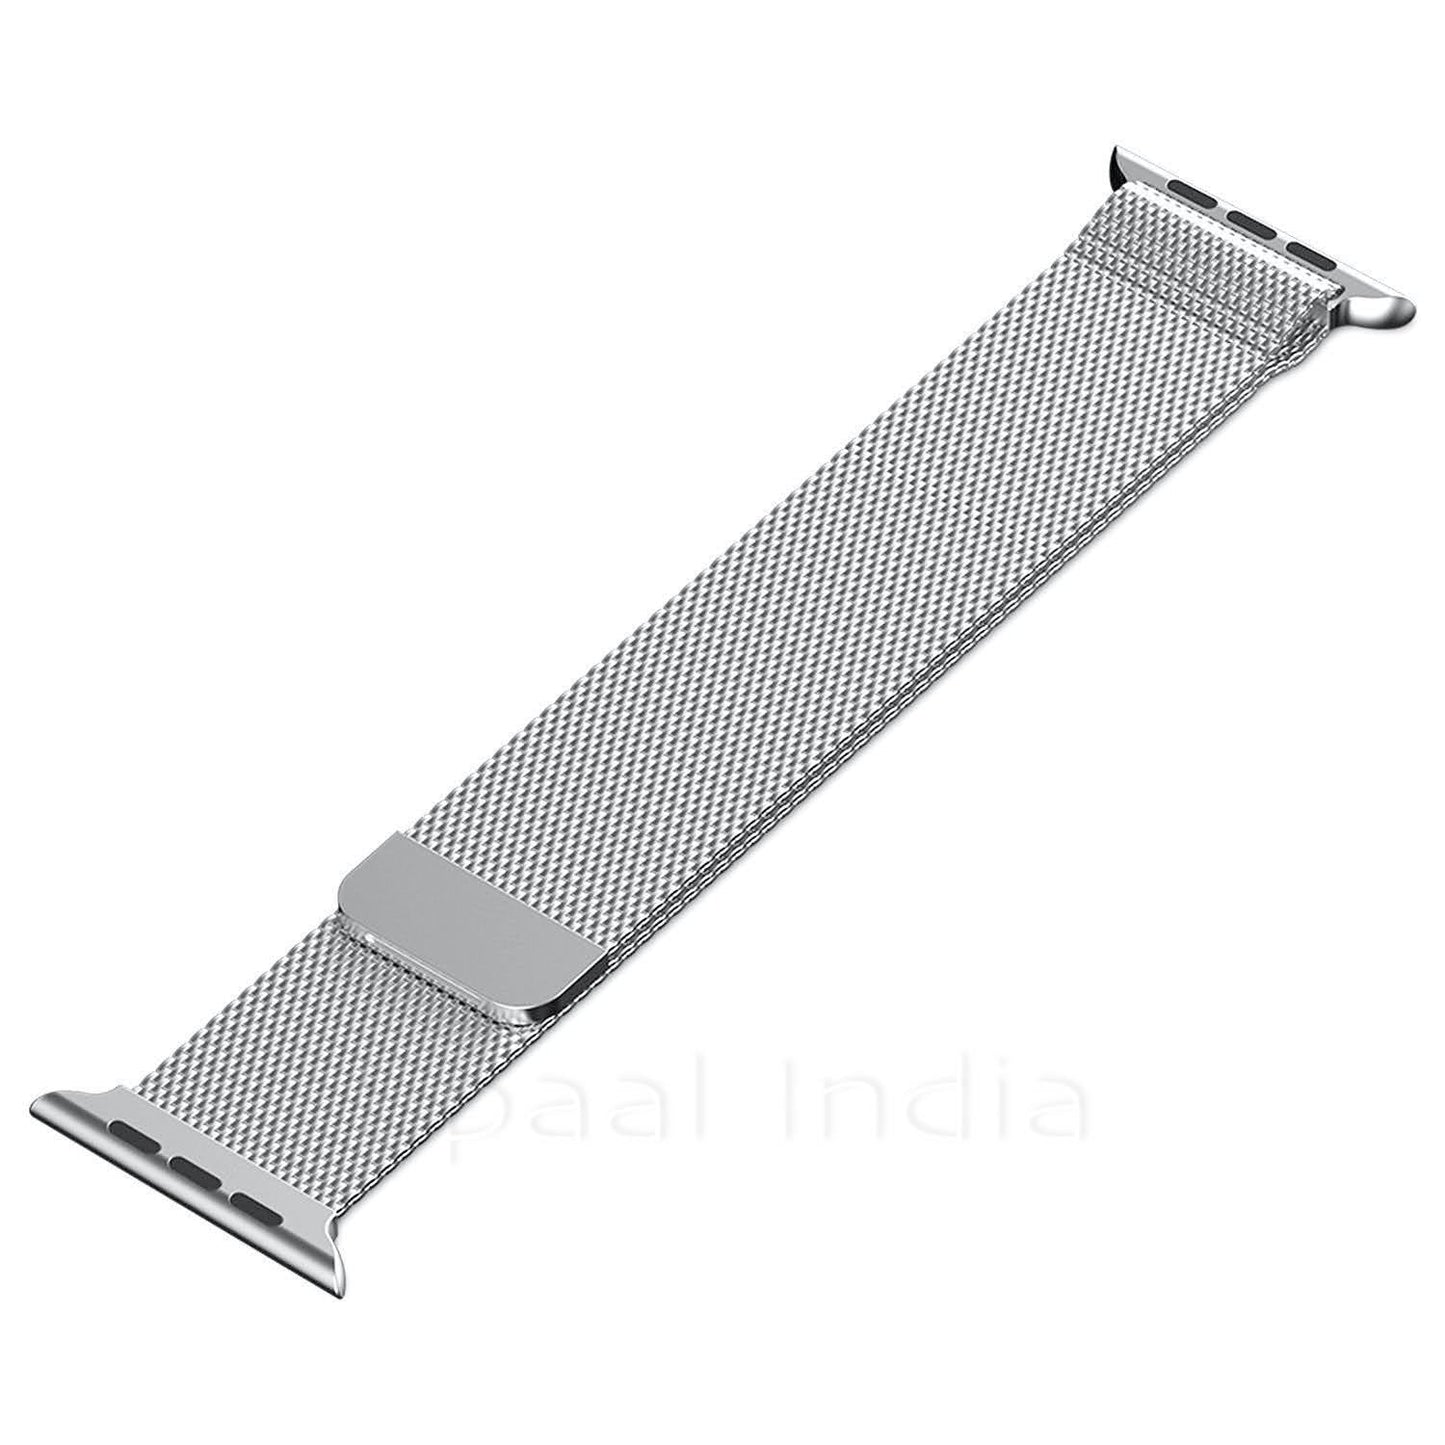 Epaal Apple Watch Series 4/3/2/1 Milanese Loop Strap Stainless Steel [38mm / 40mm]